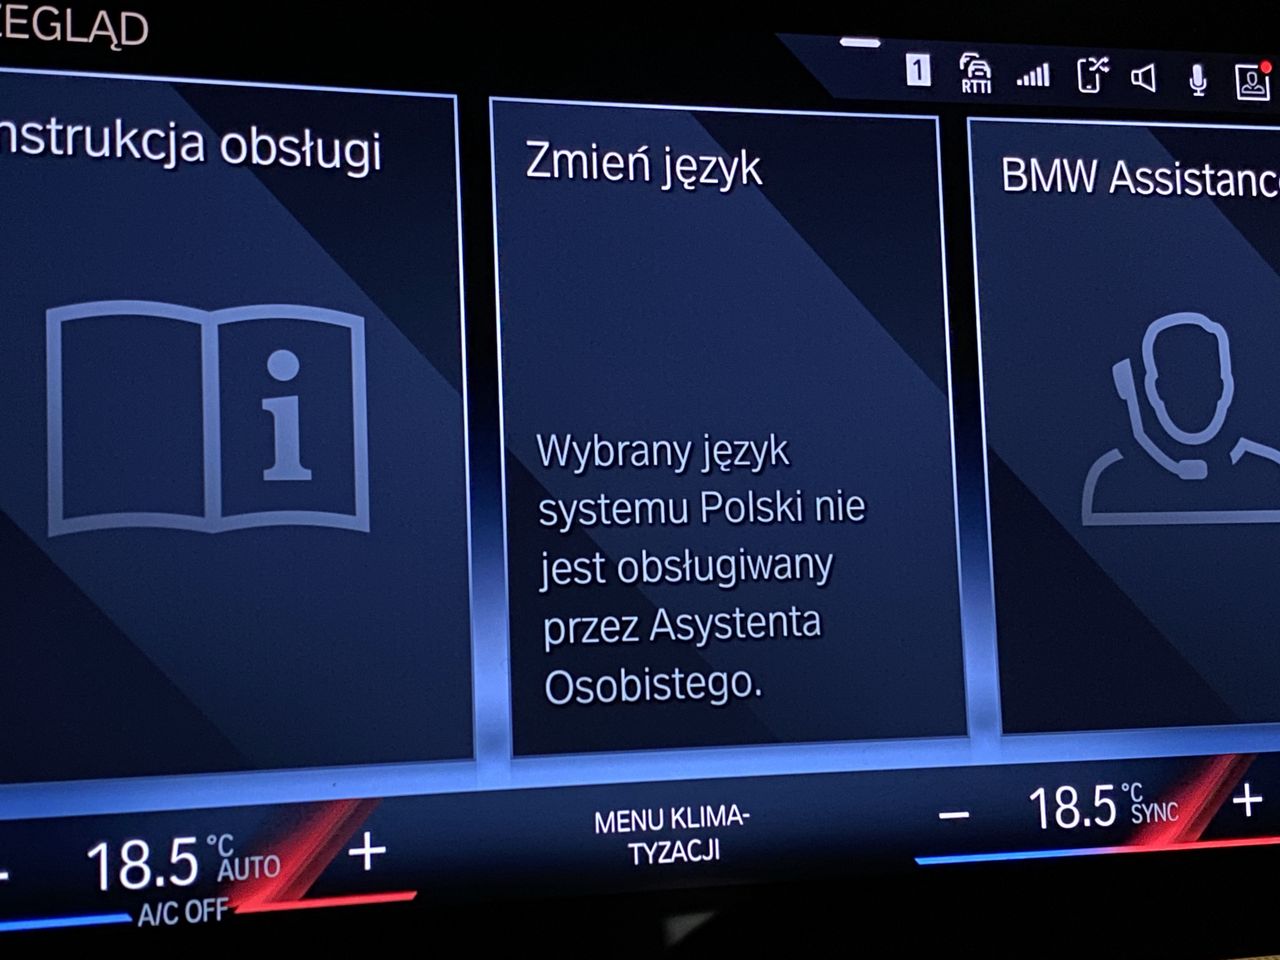 BMW wreszcie z polskim asystentem głosowym. Znamy datę premiery